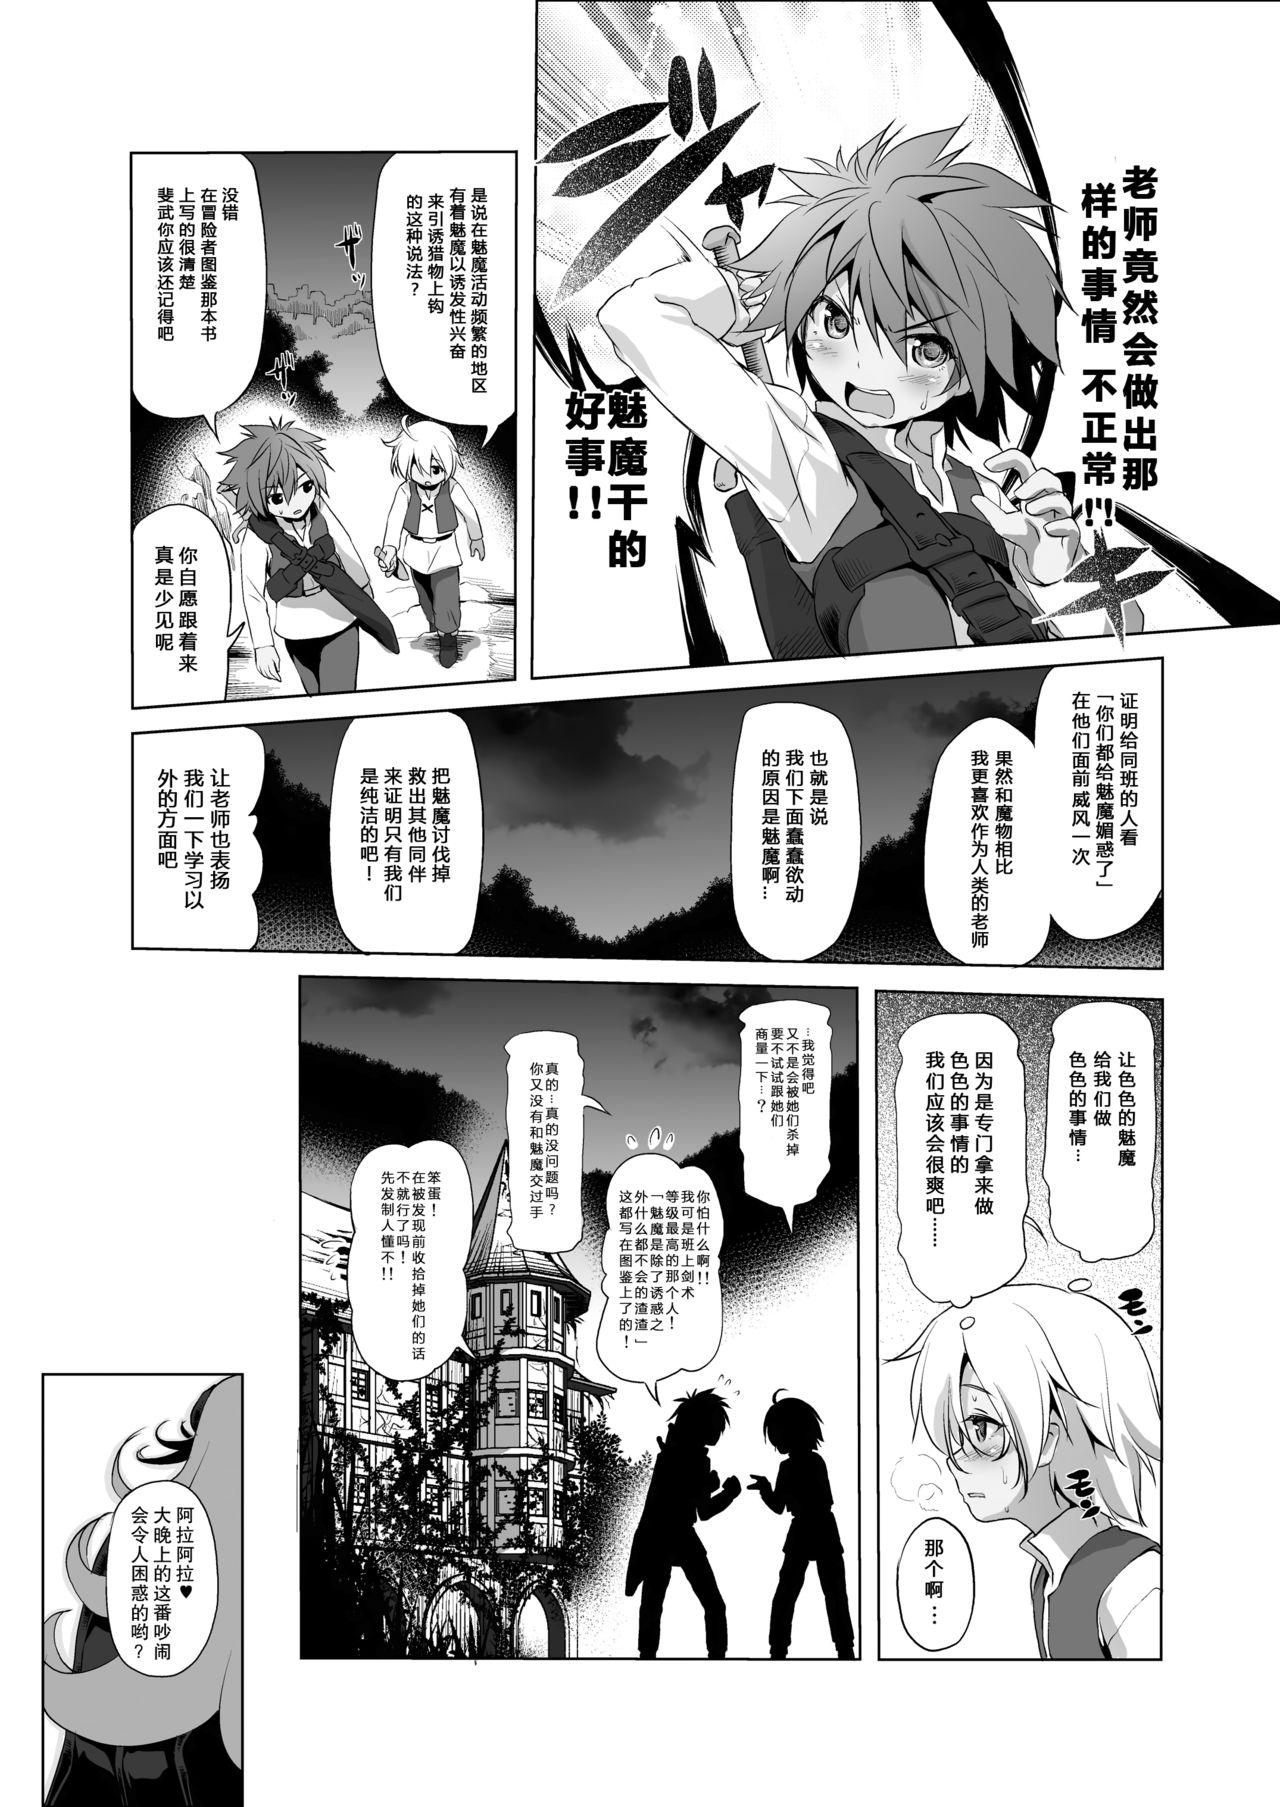 Cum Swallowing Makotoni Zannen desu ga Bouken no Sho 3 wa Kiete Shimaimashita. - Original Nerd - Page 11